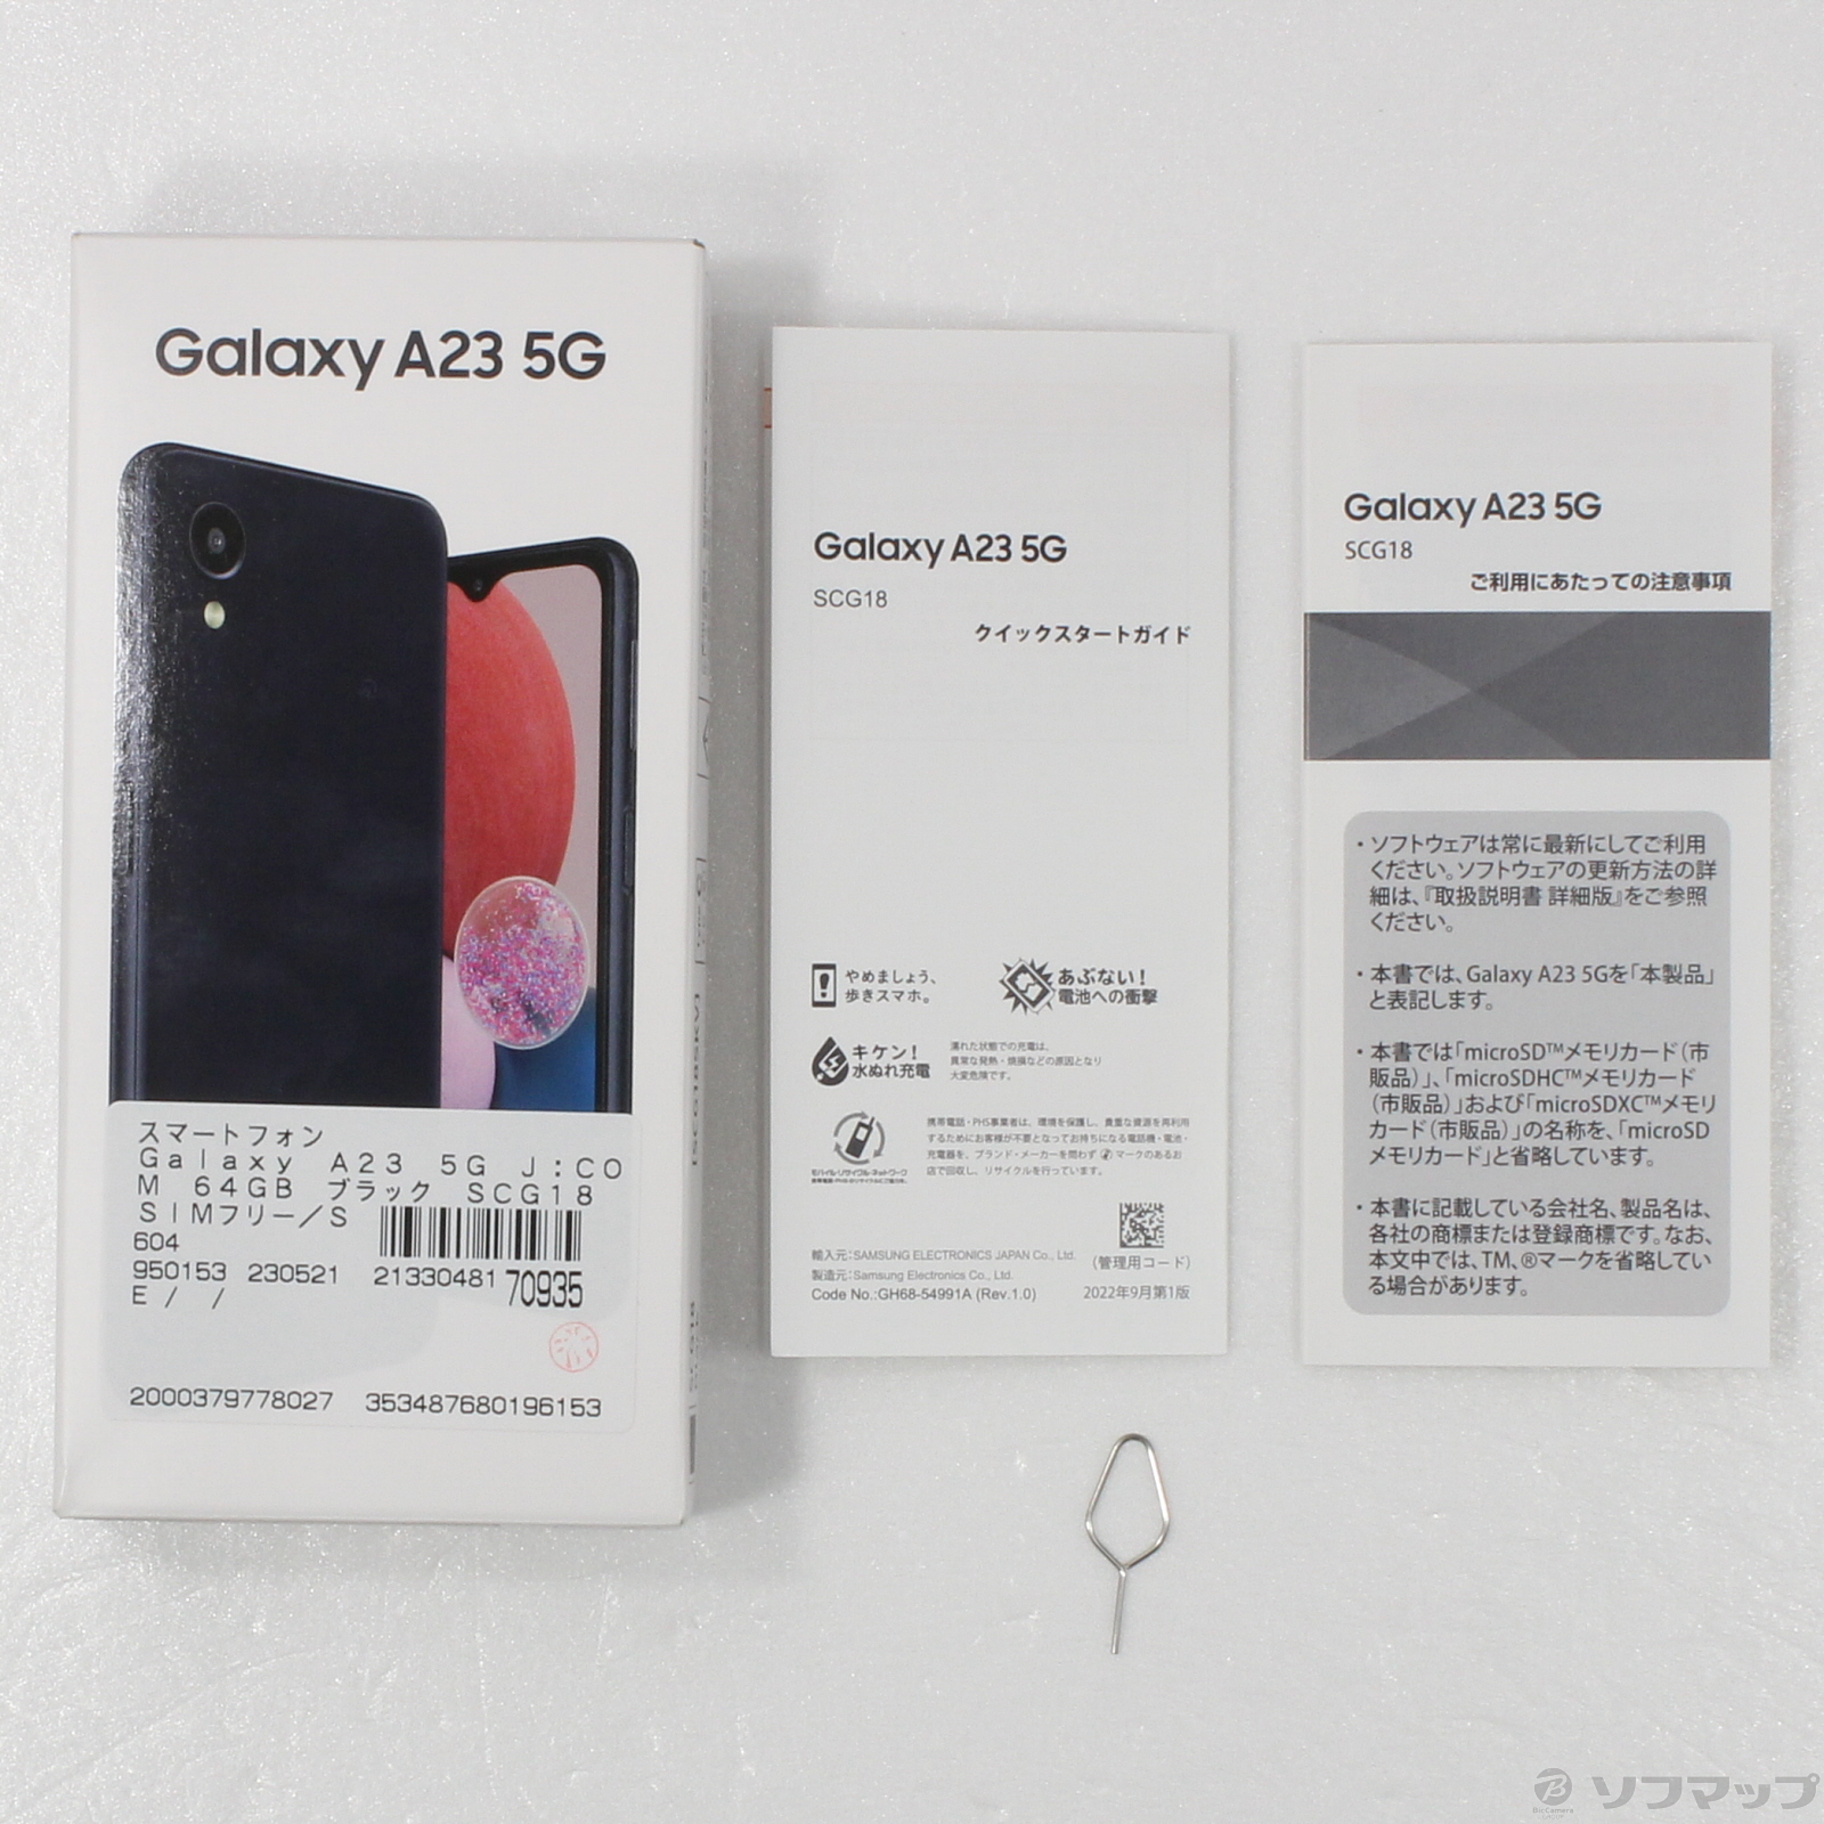 中古】Galaxy A23 5G J:COM 64GB ブラック SCG18 SIMフリー